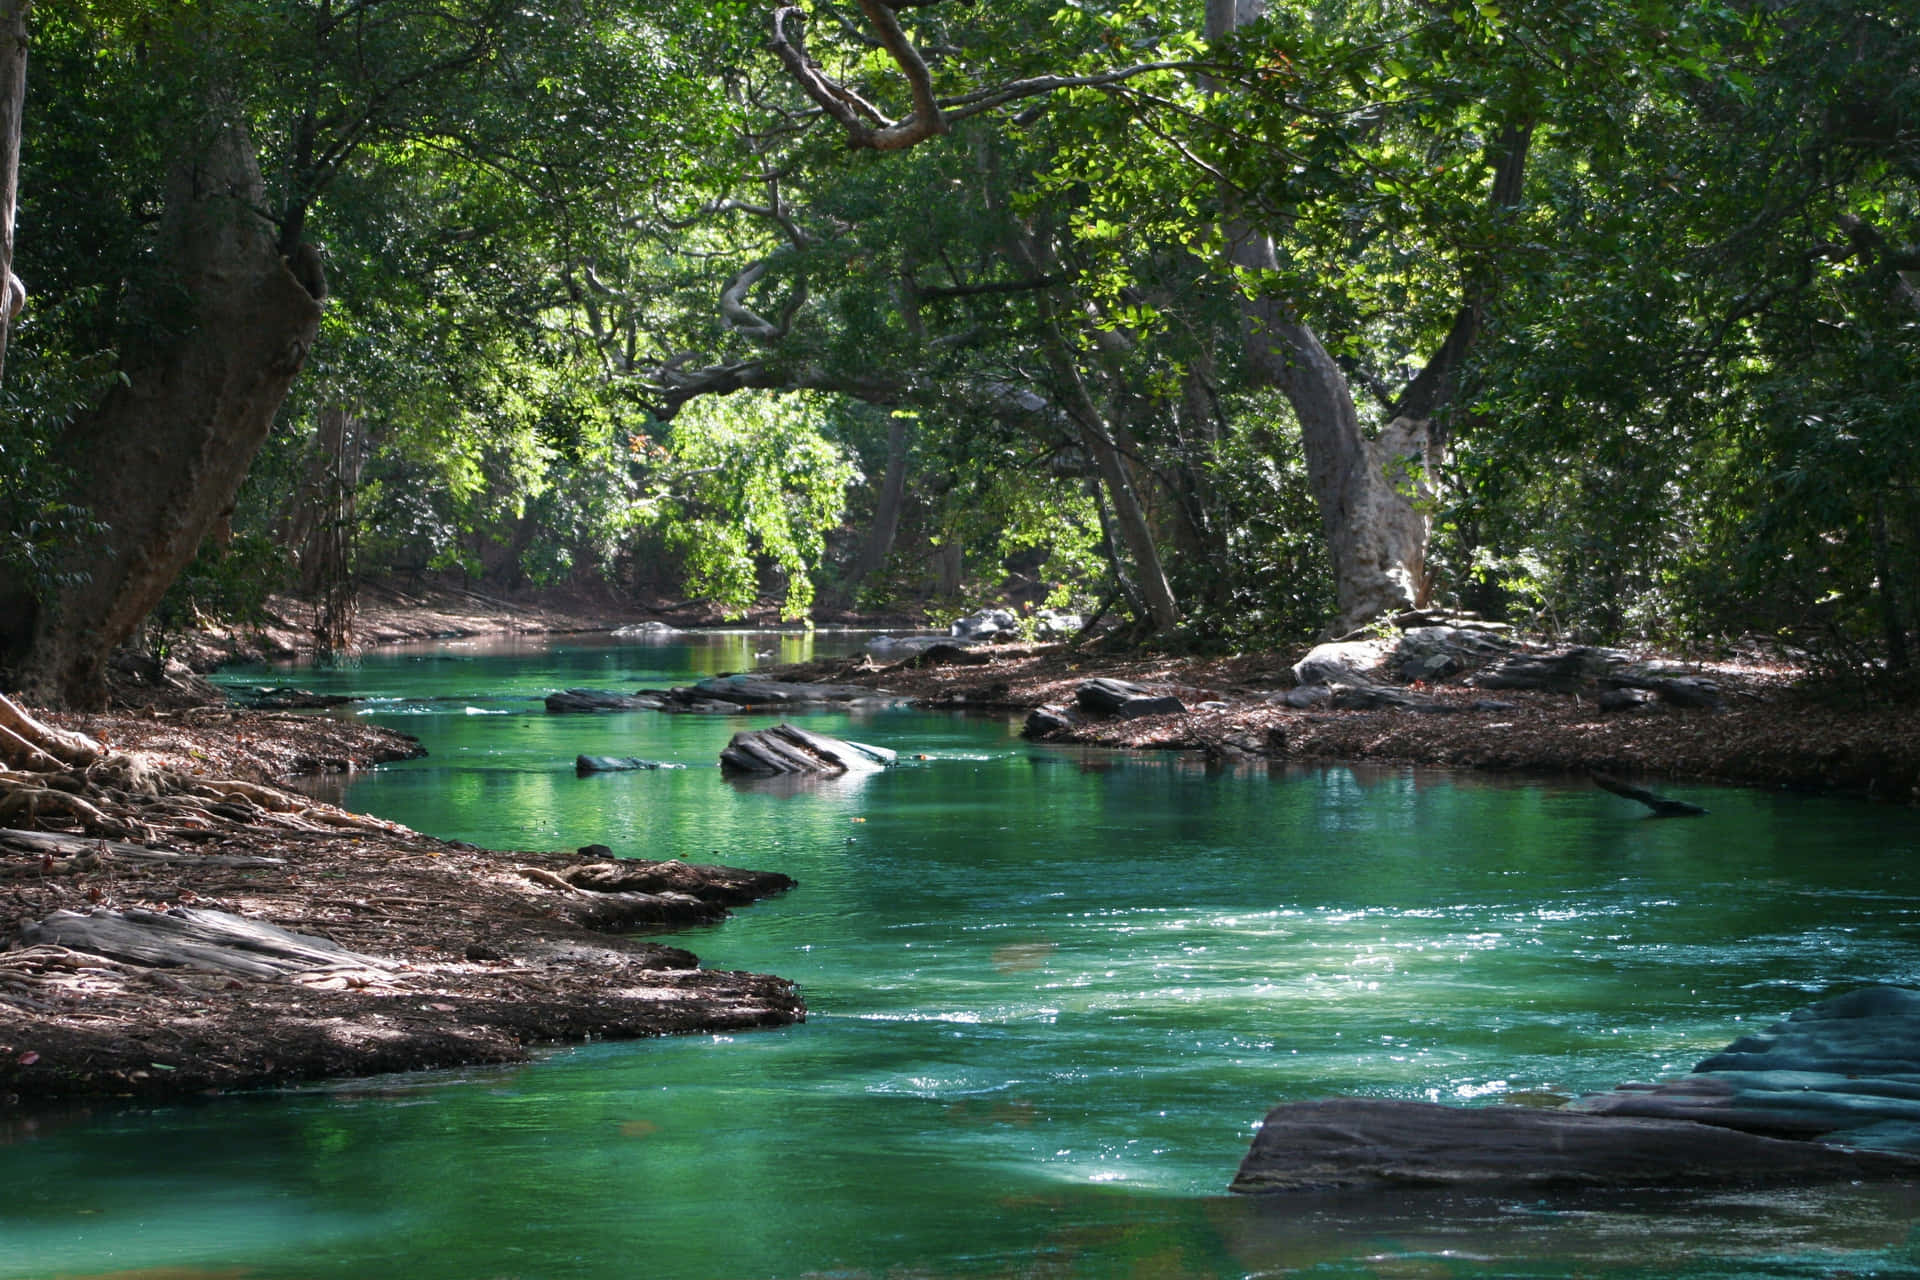 Einerfrischender Anblick - Ein Entspannender Fluss Umgeben Von Natürlicher Grünfläche.